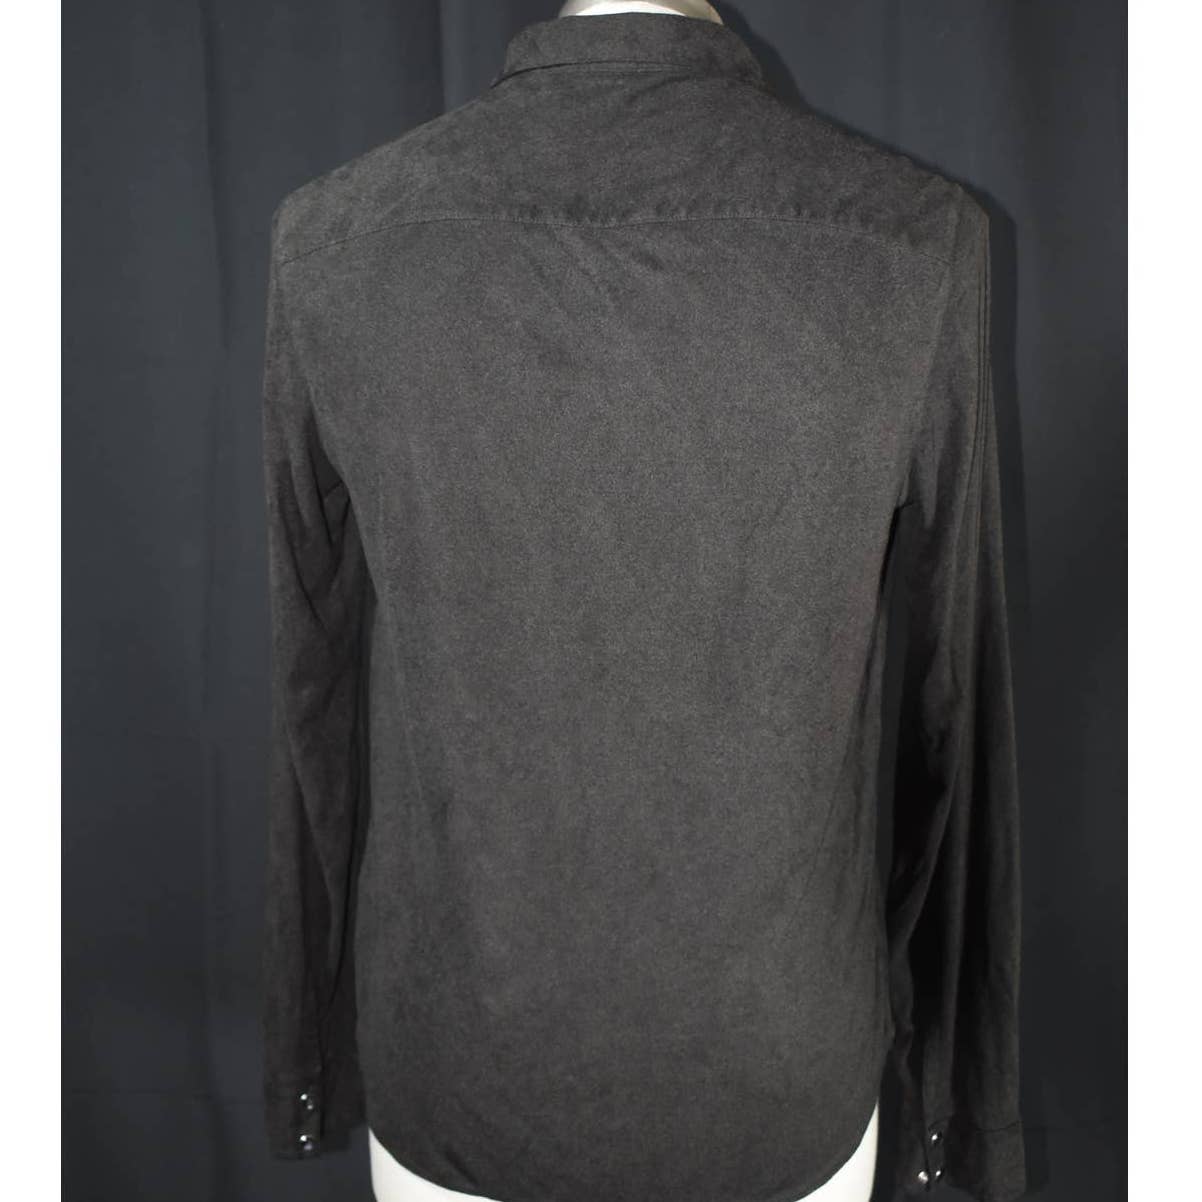 John Varvatos Clasp Button Up Dark Brown Ultra Suede Shirt- M